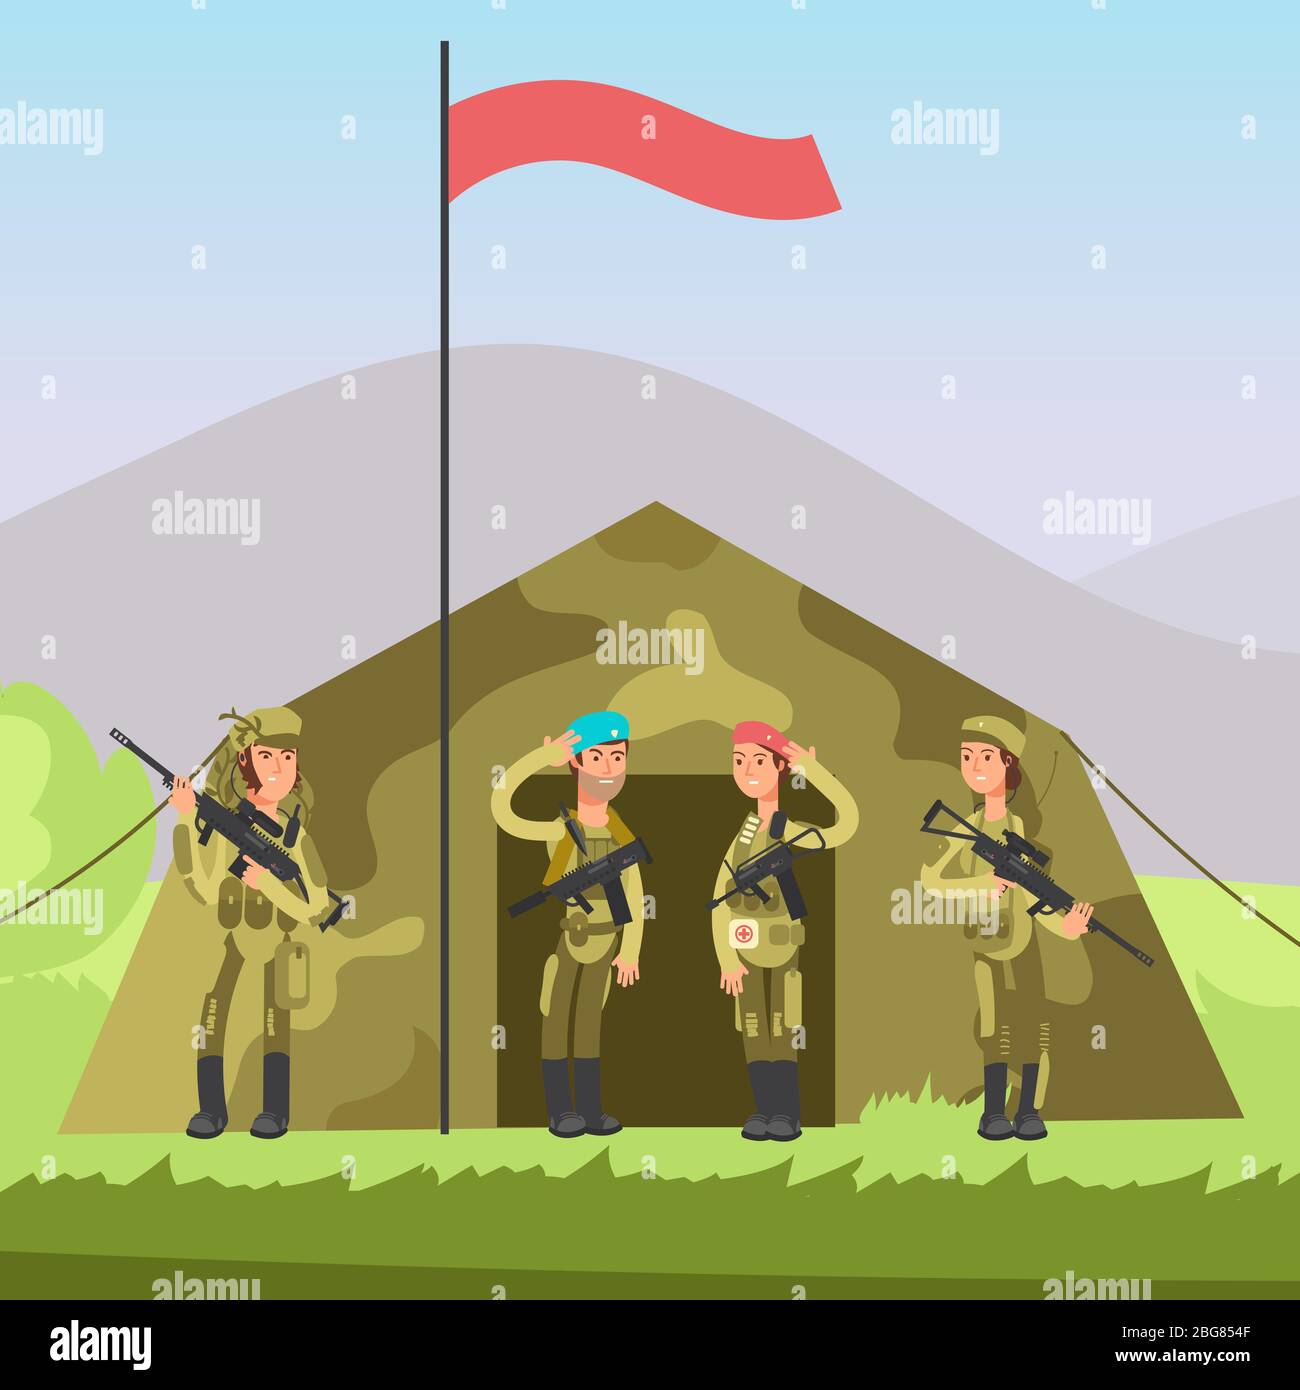 US-Armee Soldat mit Gewehr in Uniform. Militär Vektor Hintergrund mit Cartoon-Charakter männlich und weiblich Soldaten Illustration Stock Vektor